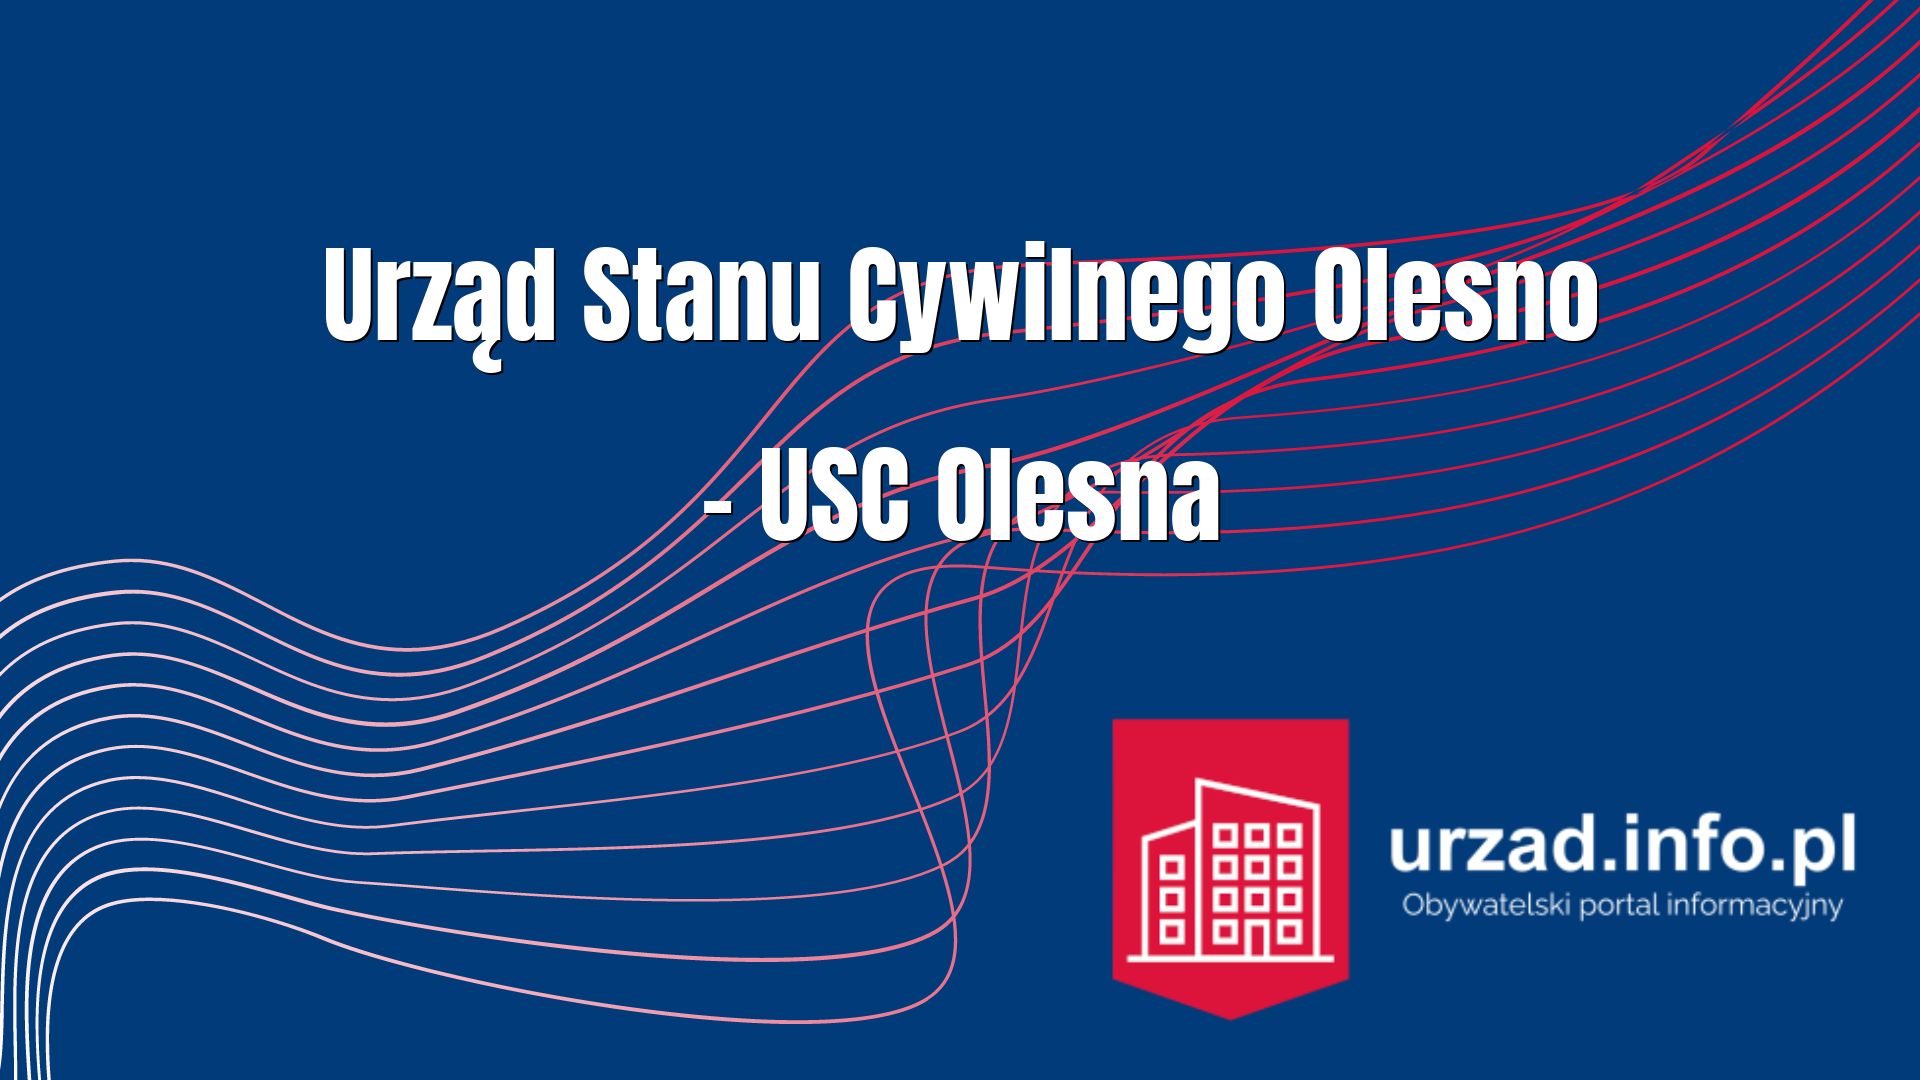 Urząd Stanu Cywilnego Olesno – USC Olesna